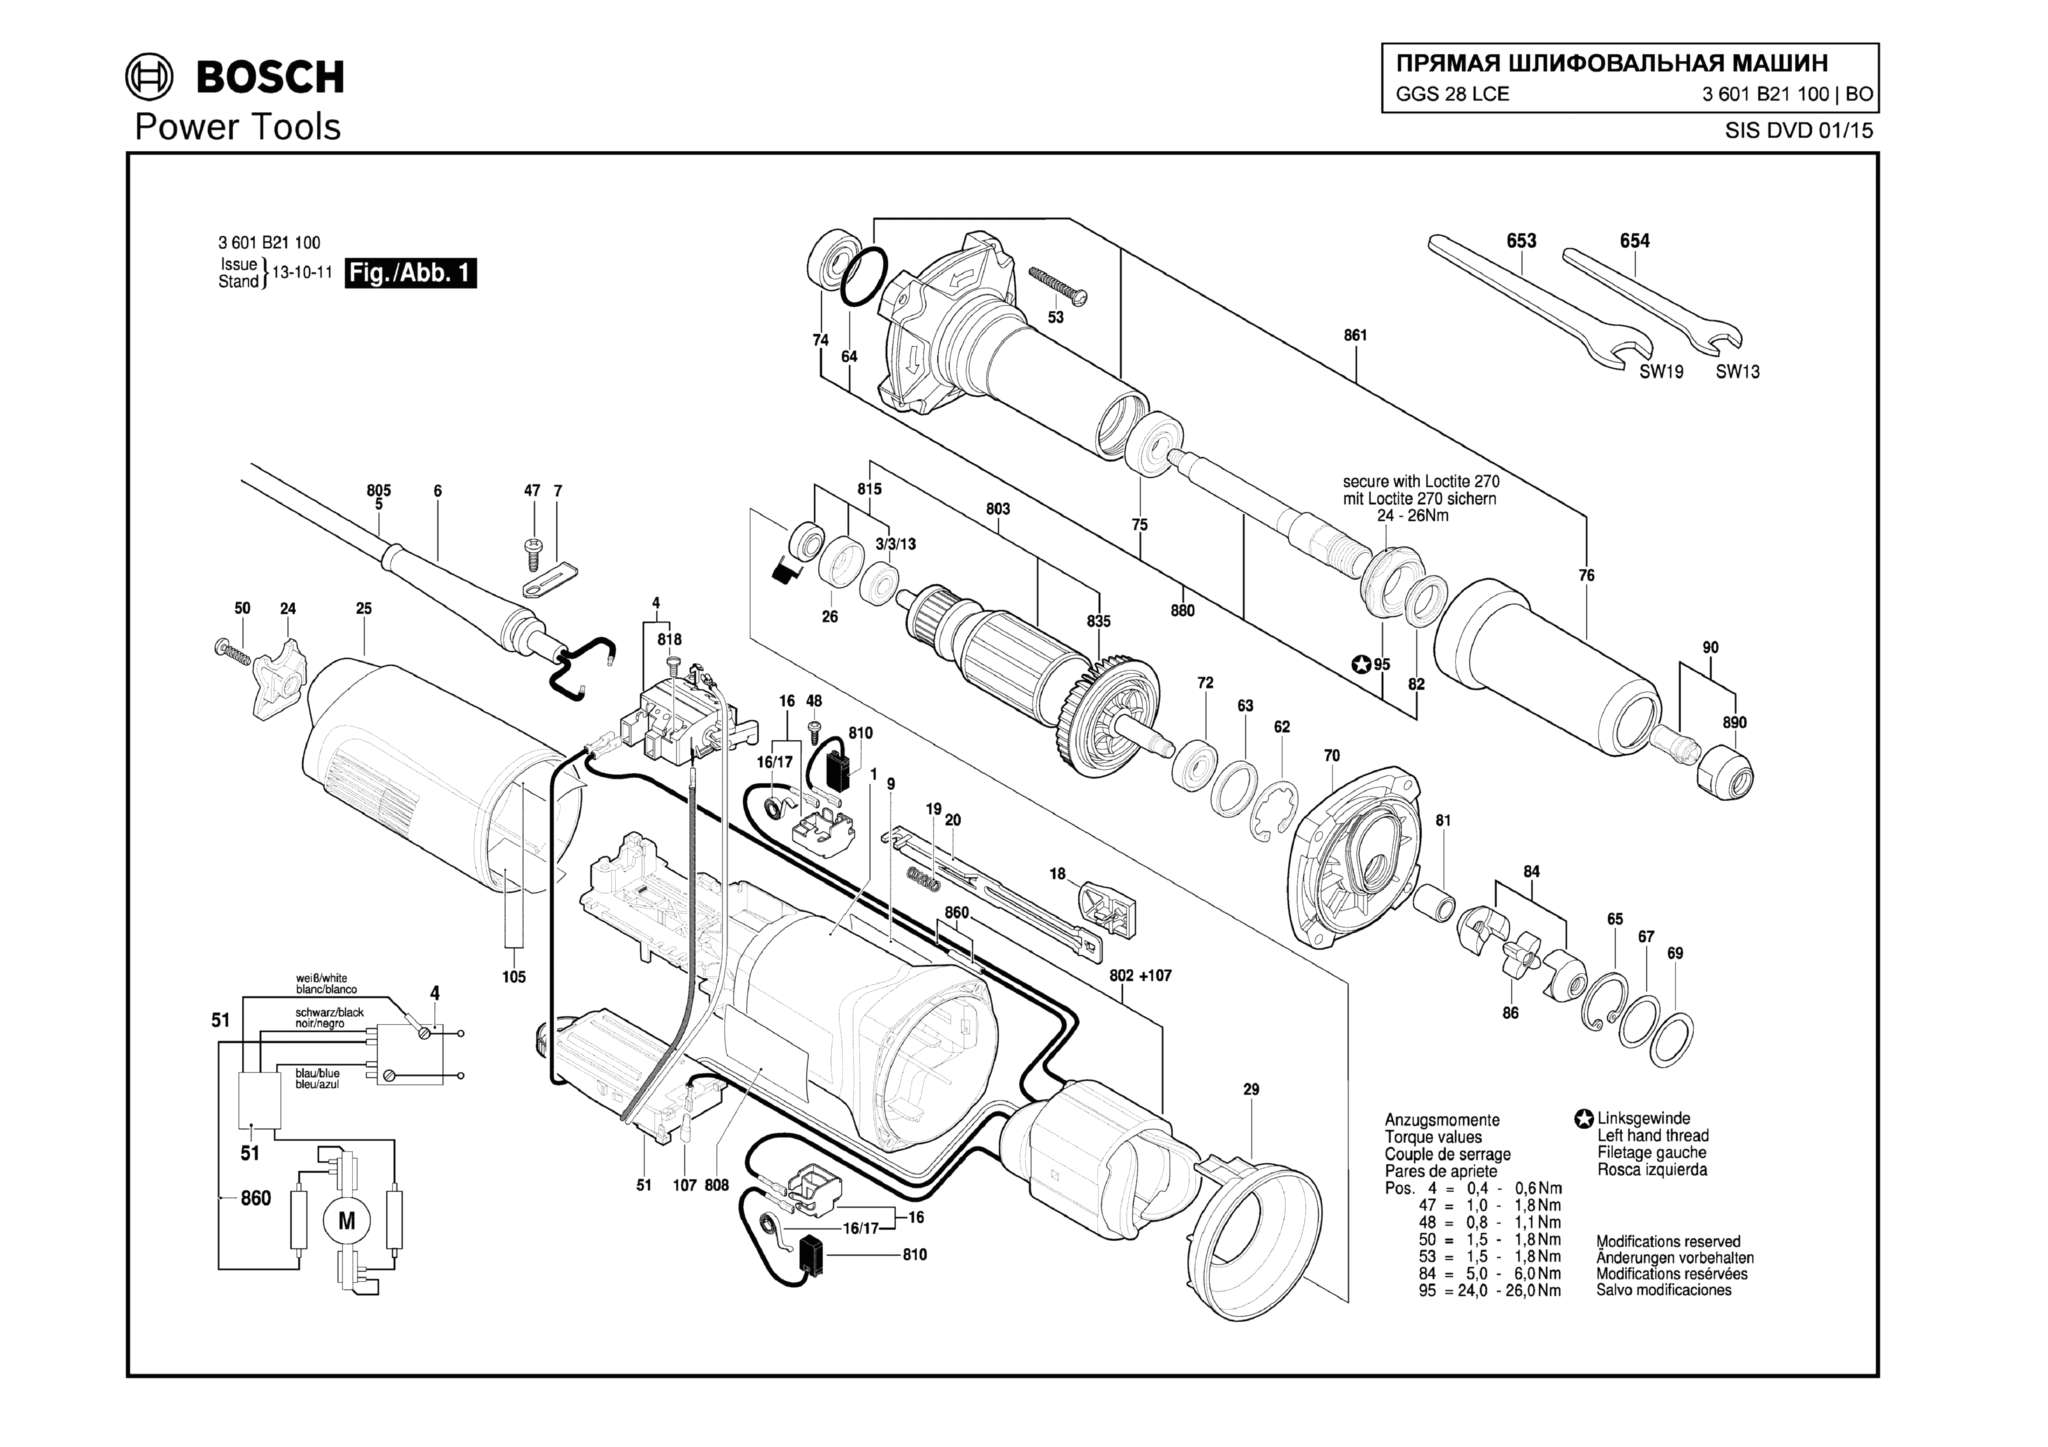 Запчасти, схема и деталировка Bosch GGS 28 LCE (ТИП 3601B21100)